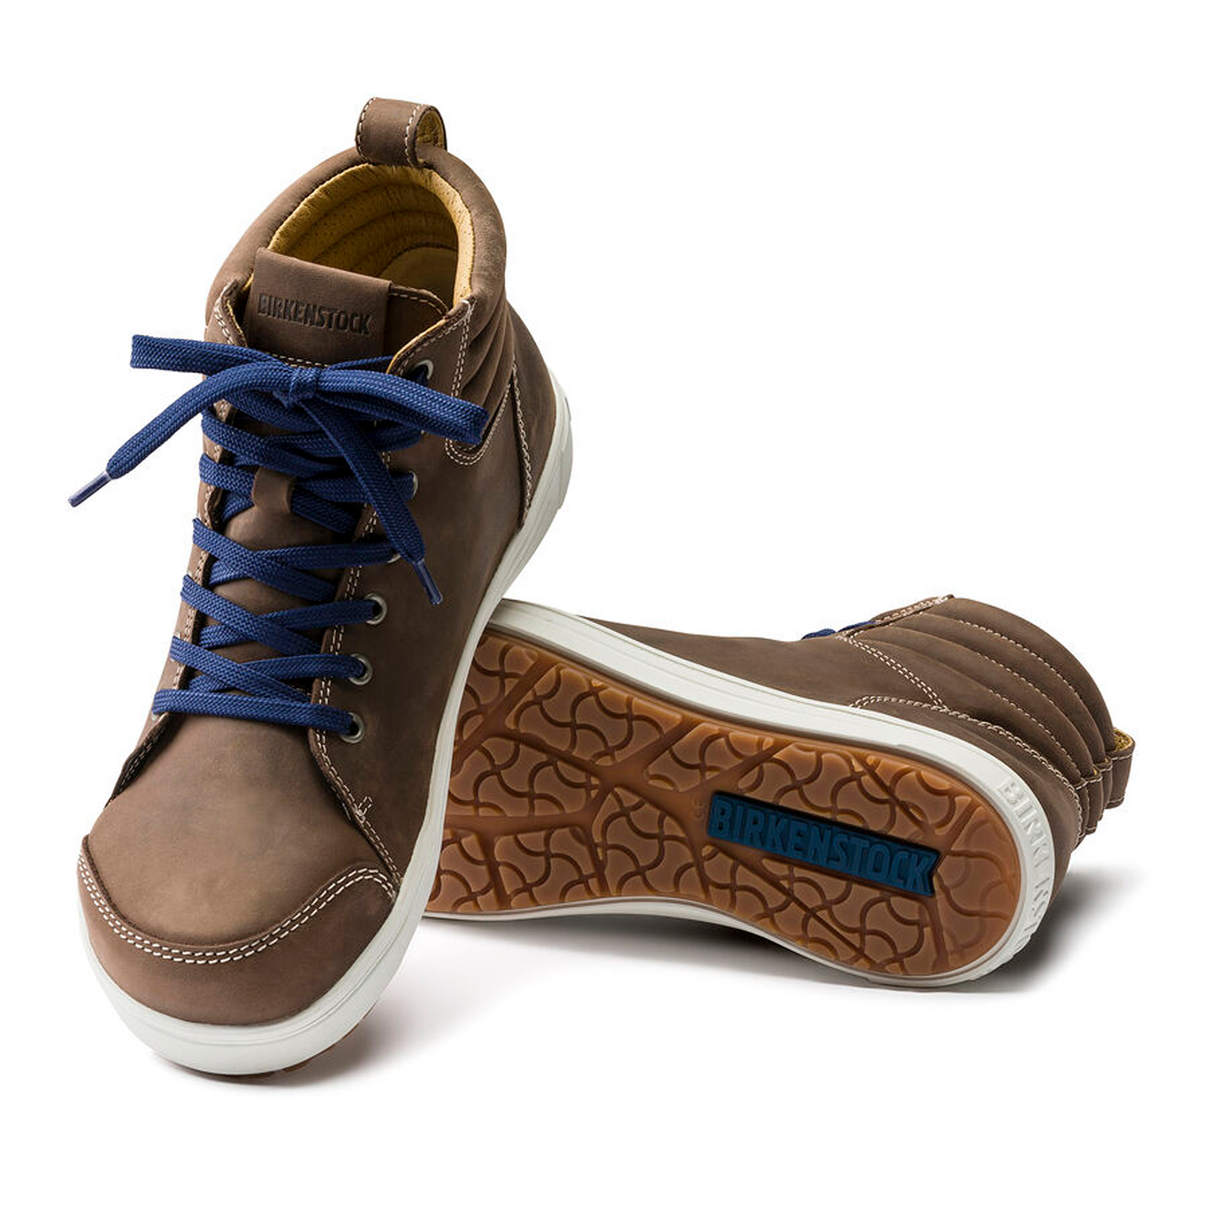 Birkenstock QS700 High Top Steel Toe Safety Shoe (Men) - Brown Nubuck Boots - Work - The Heel Shoe Fitters